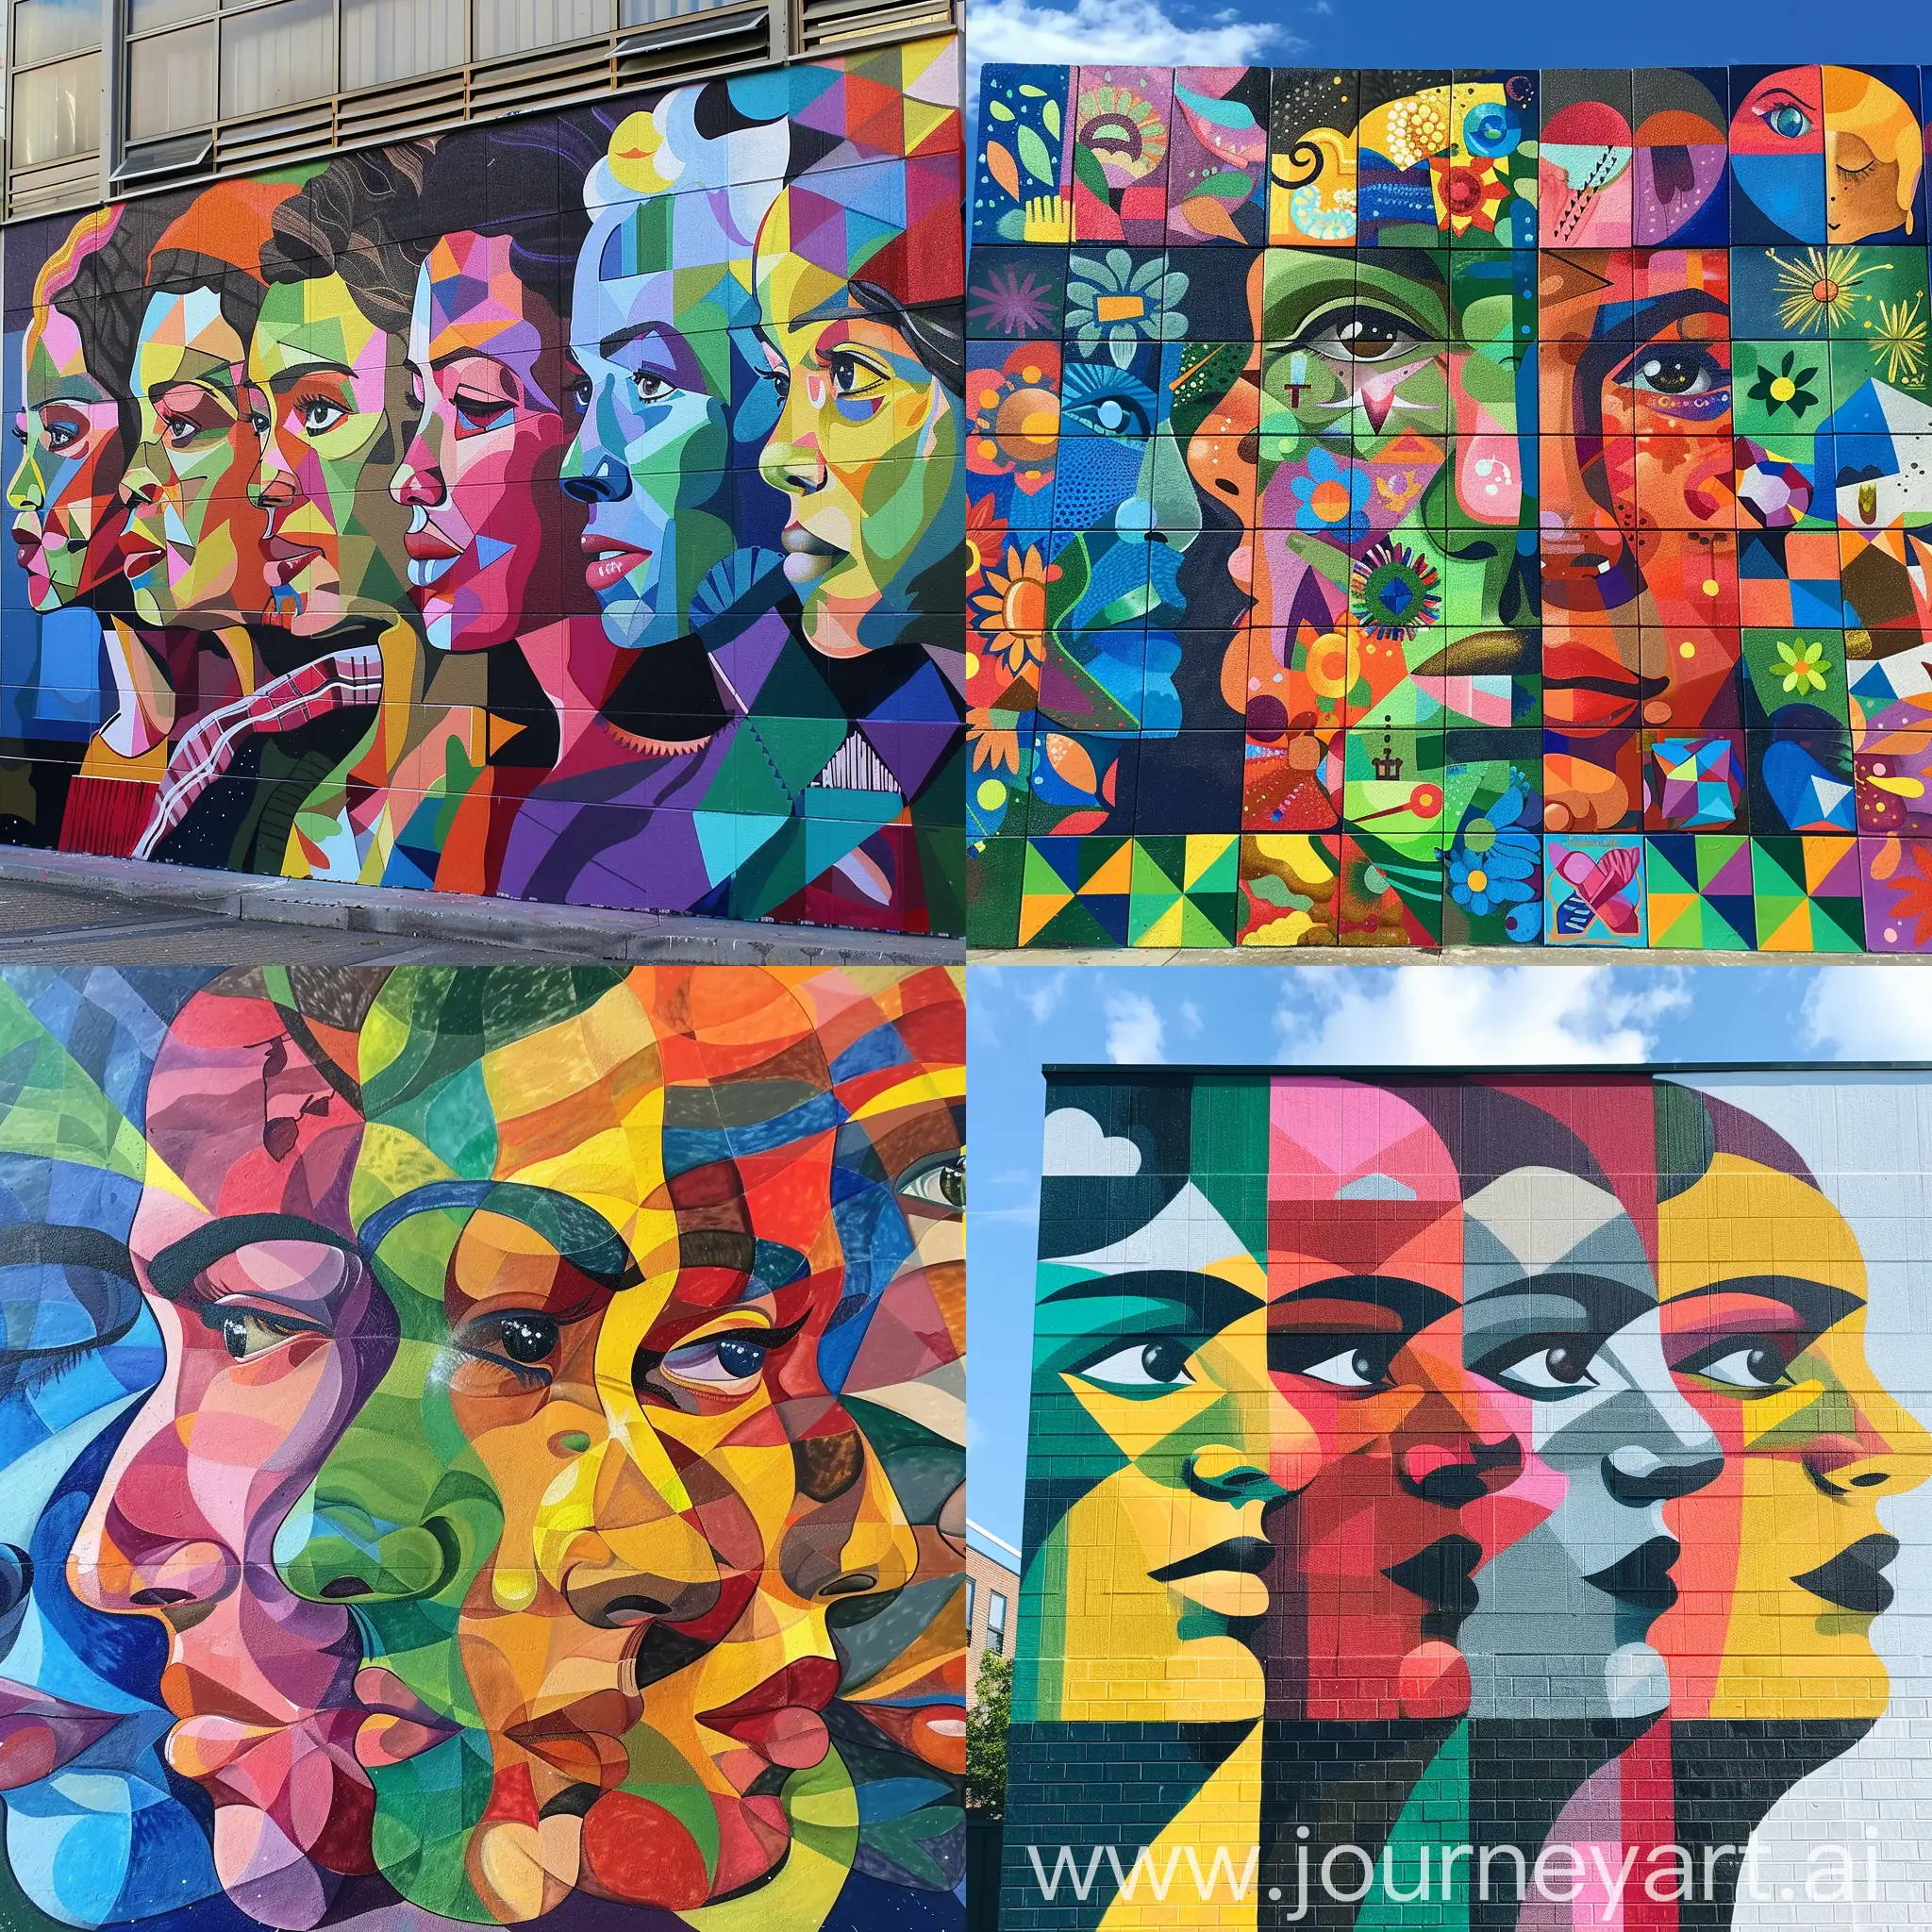 a mural art about diversity